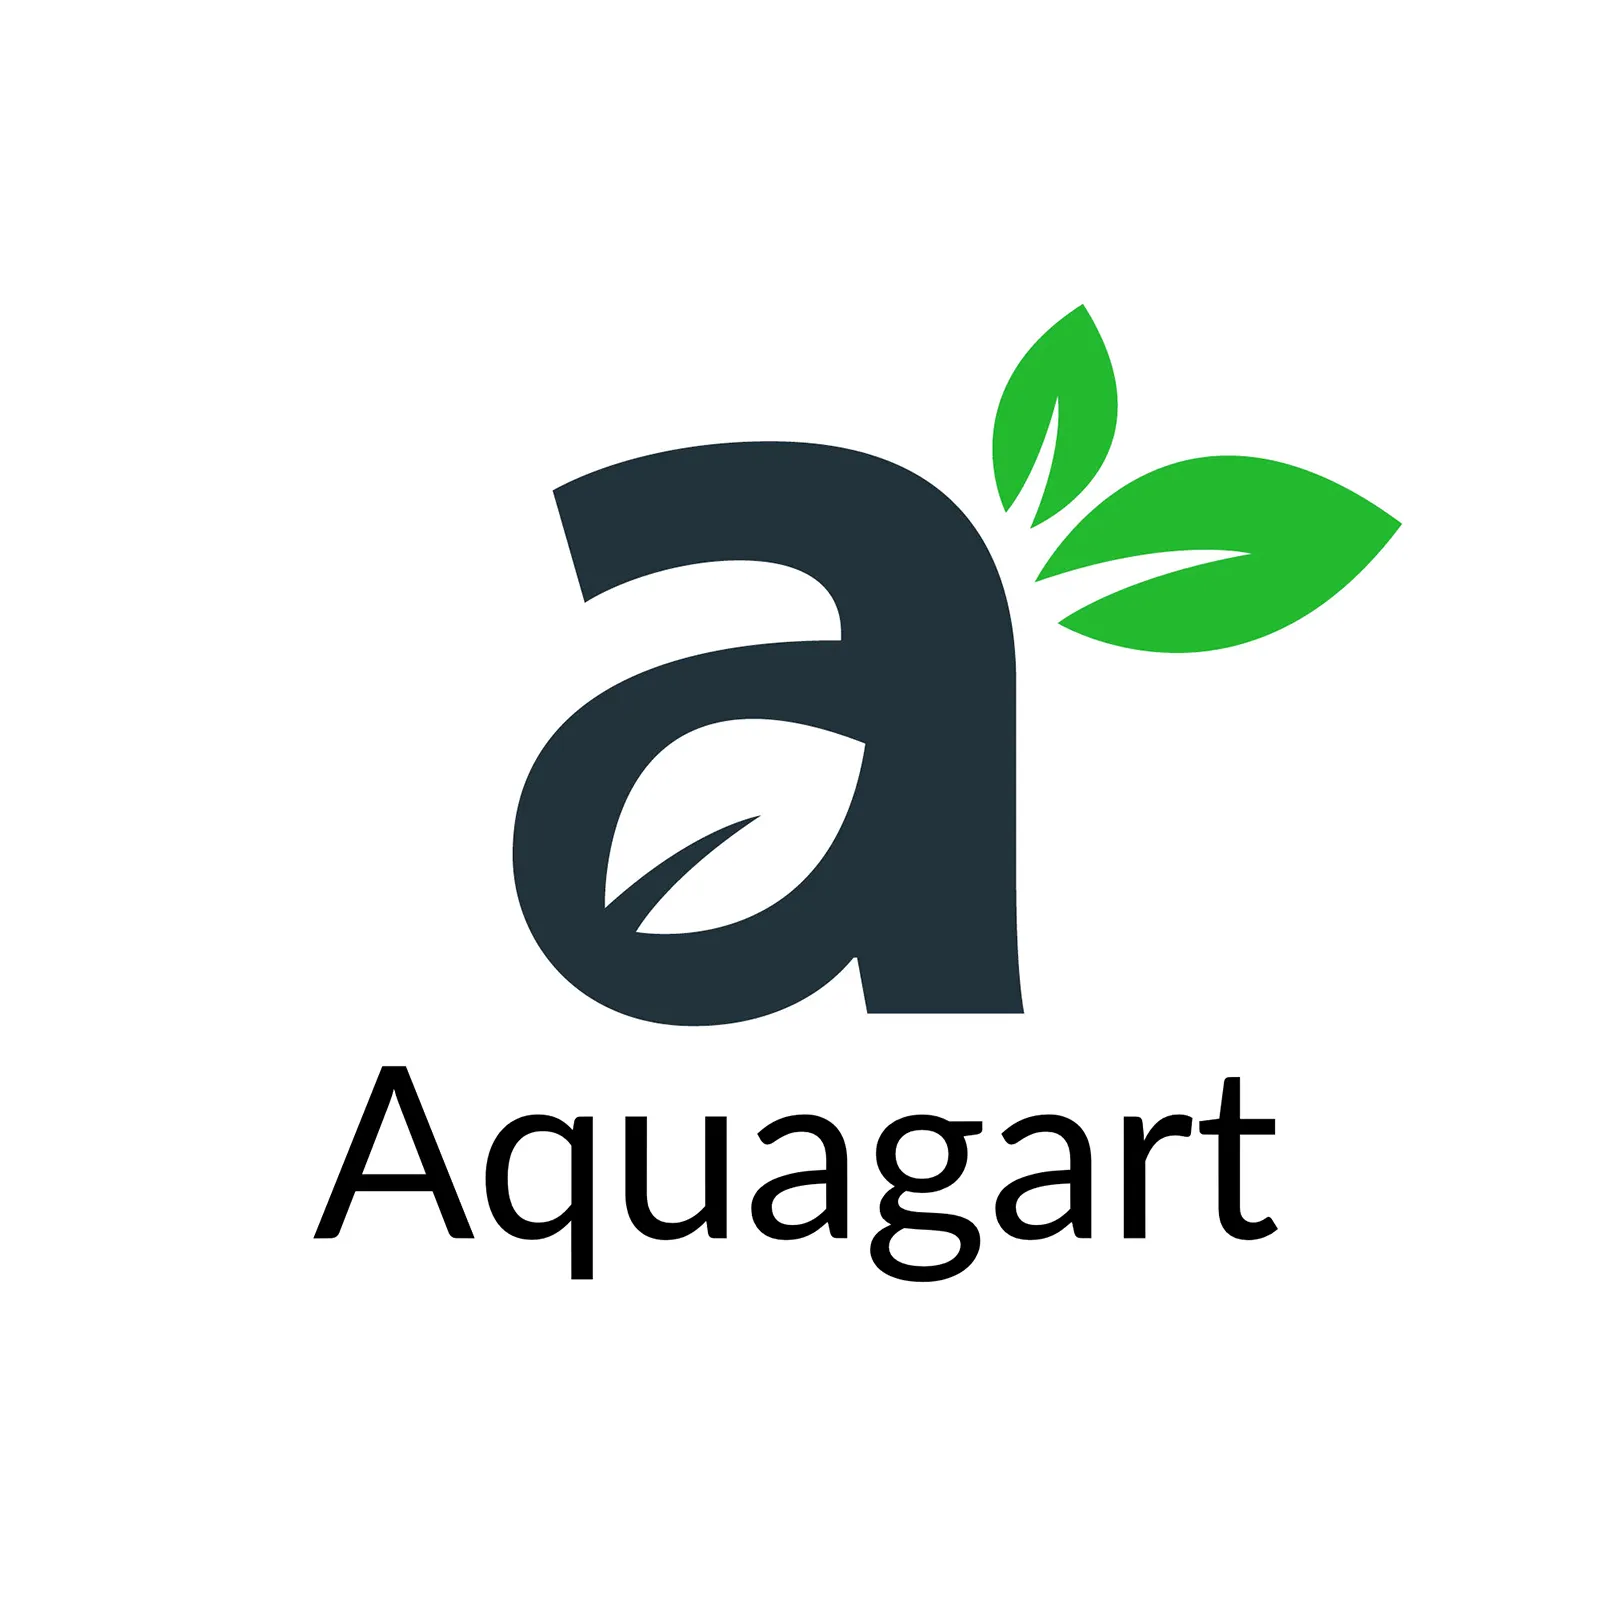 Aquagart